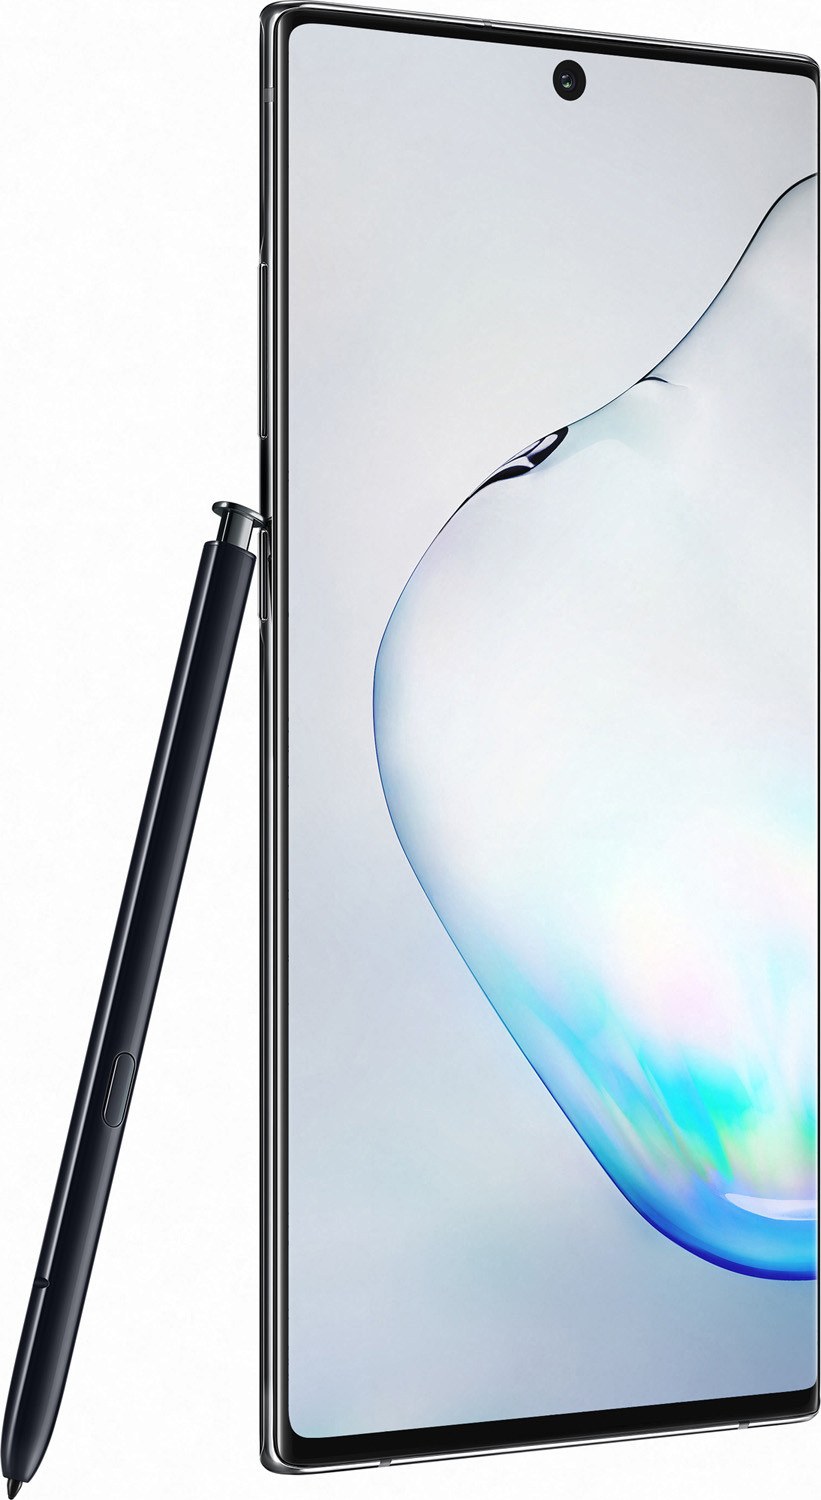 Смартфон Samsung Galaxy Note 10 Plus (N9750) 12/256GB Aura Black (Черный)